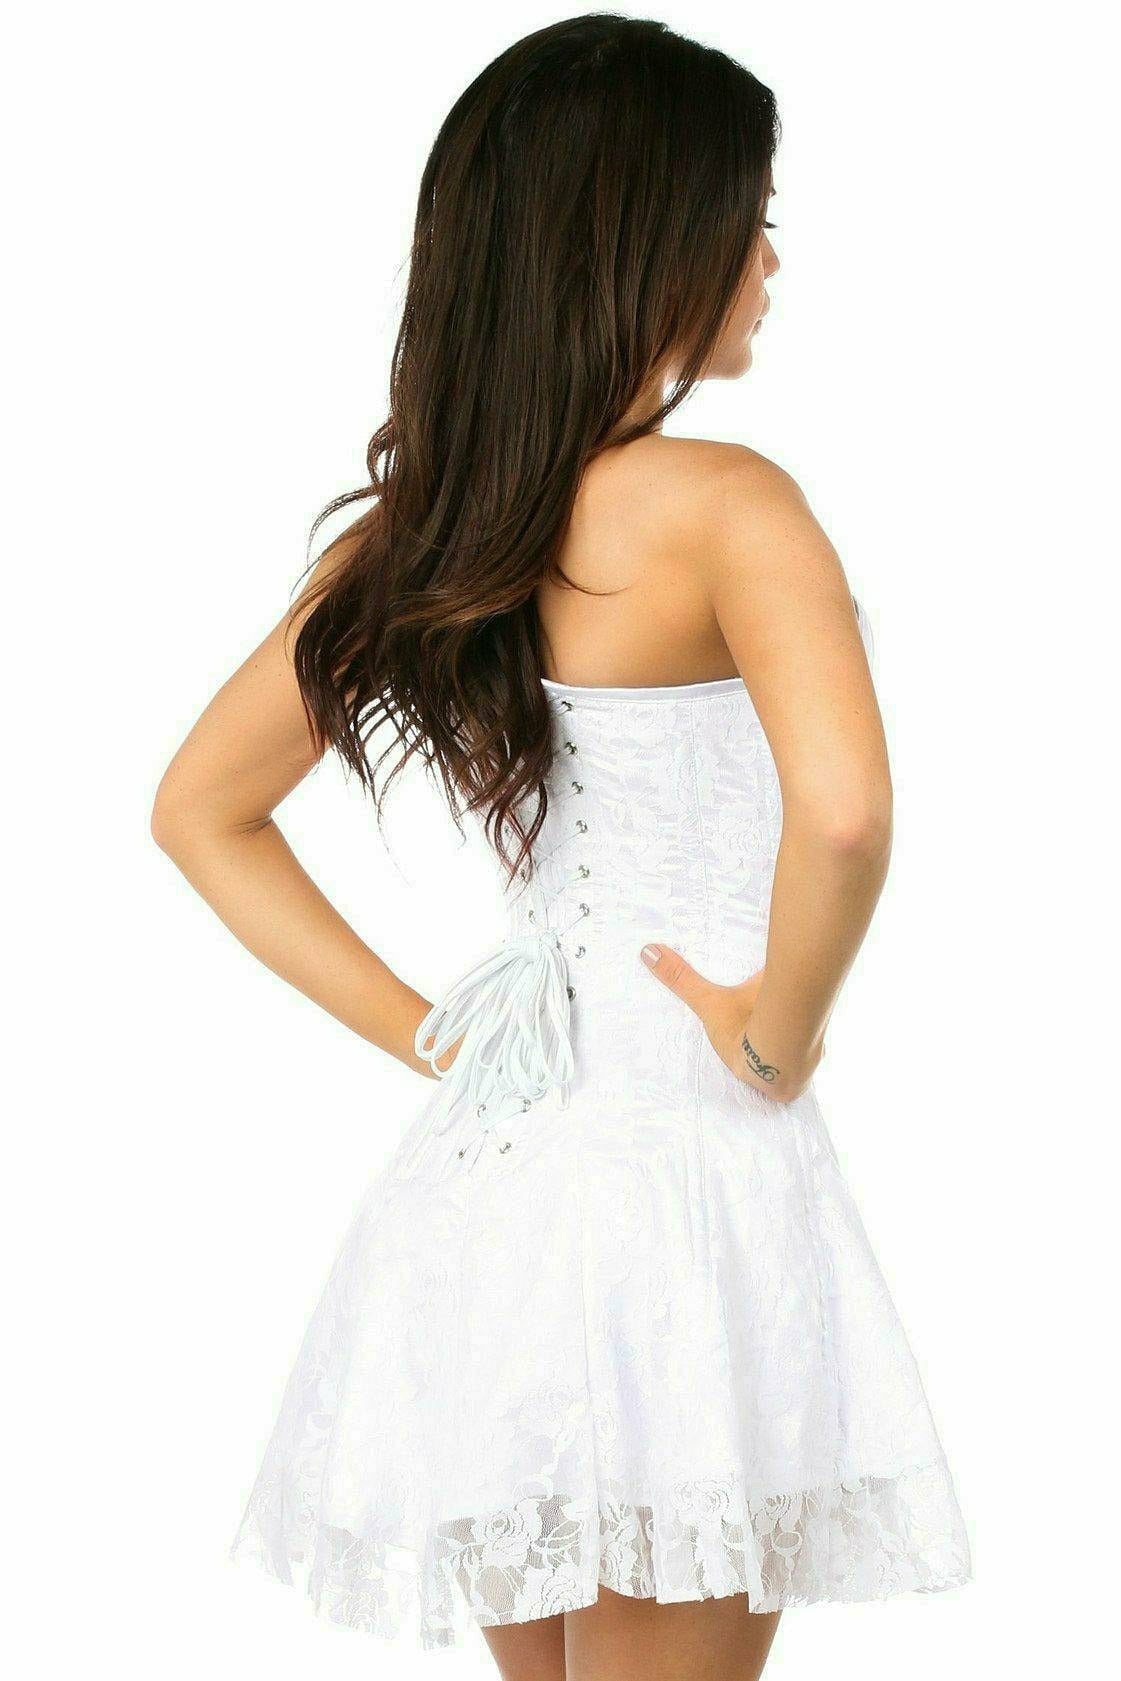 Daisy Corsets Lavish White Lace Corset Dress